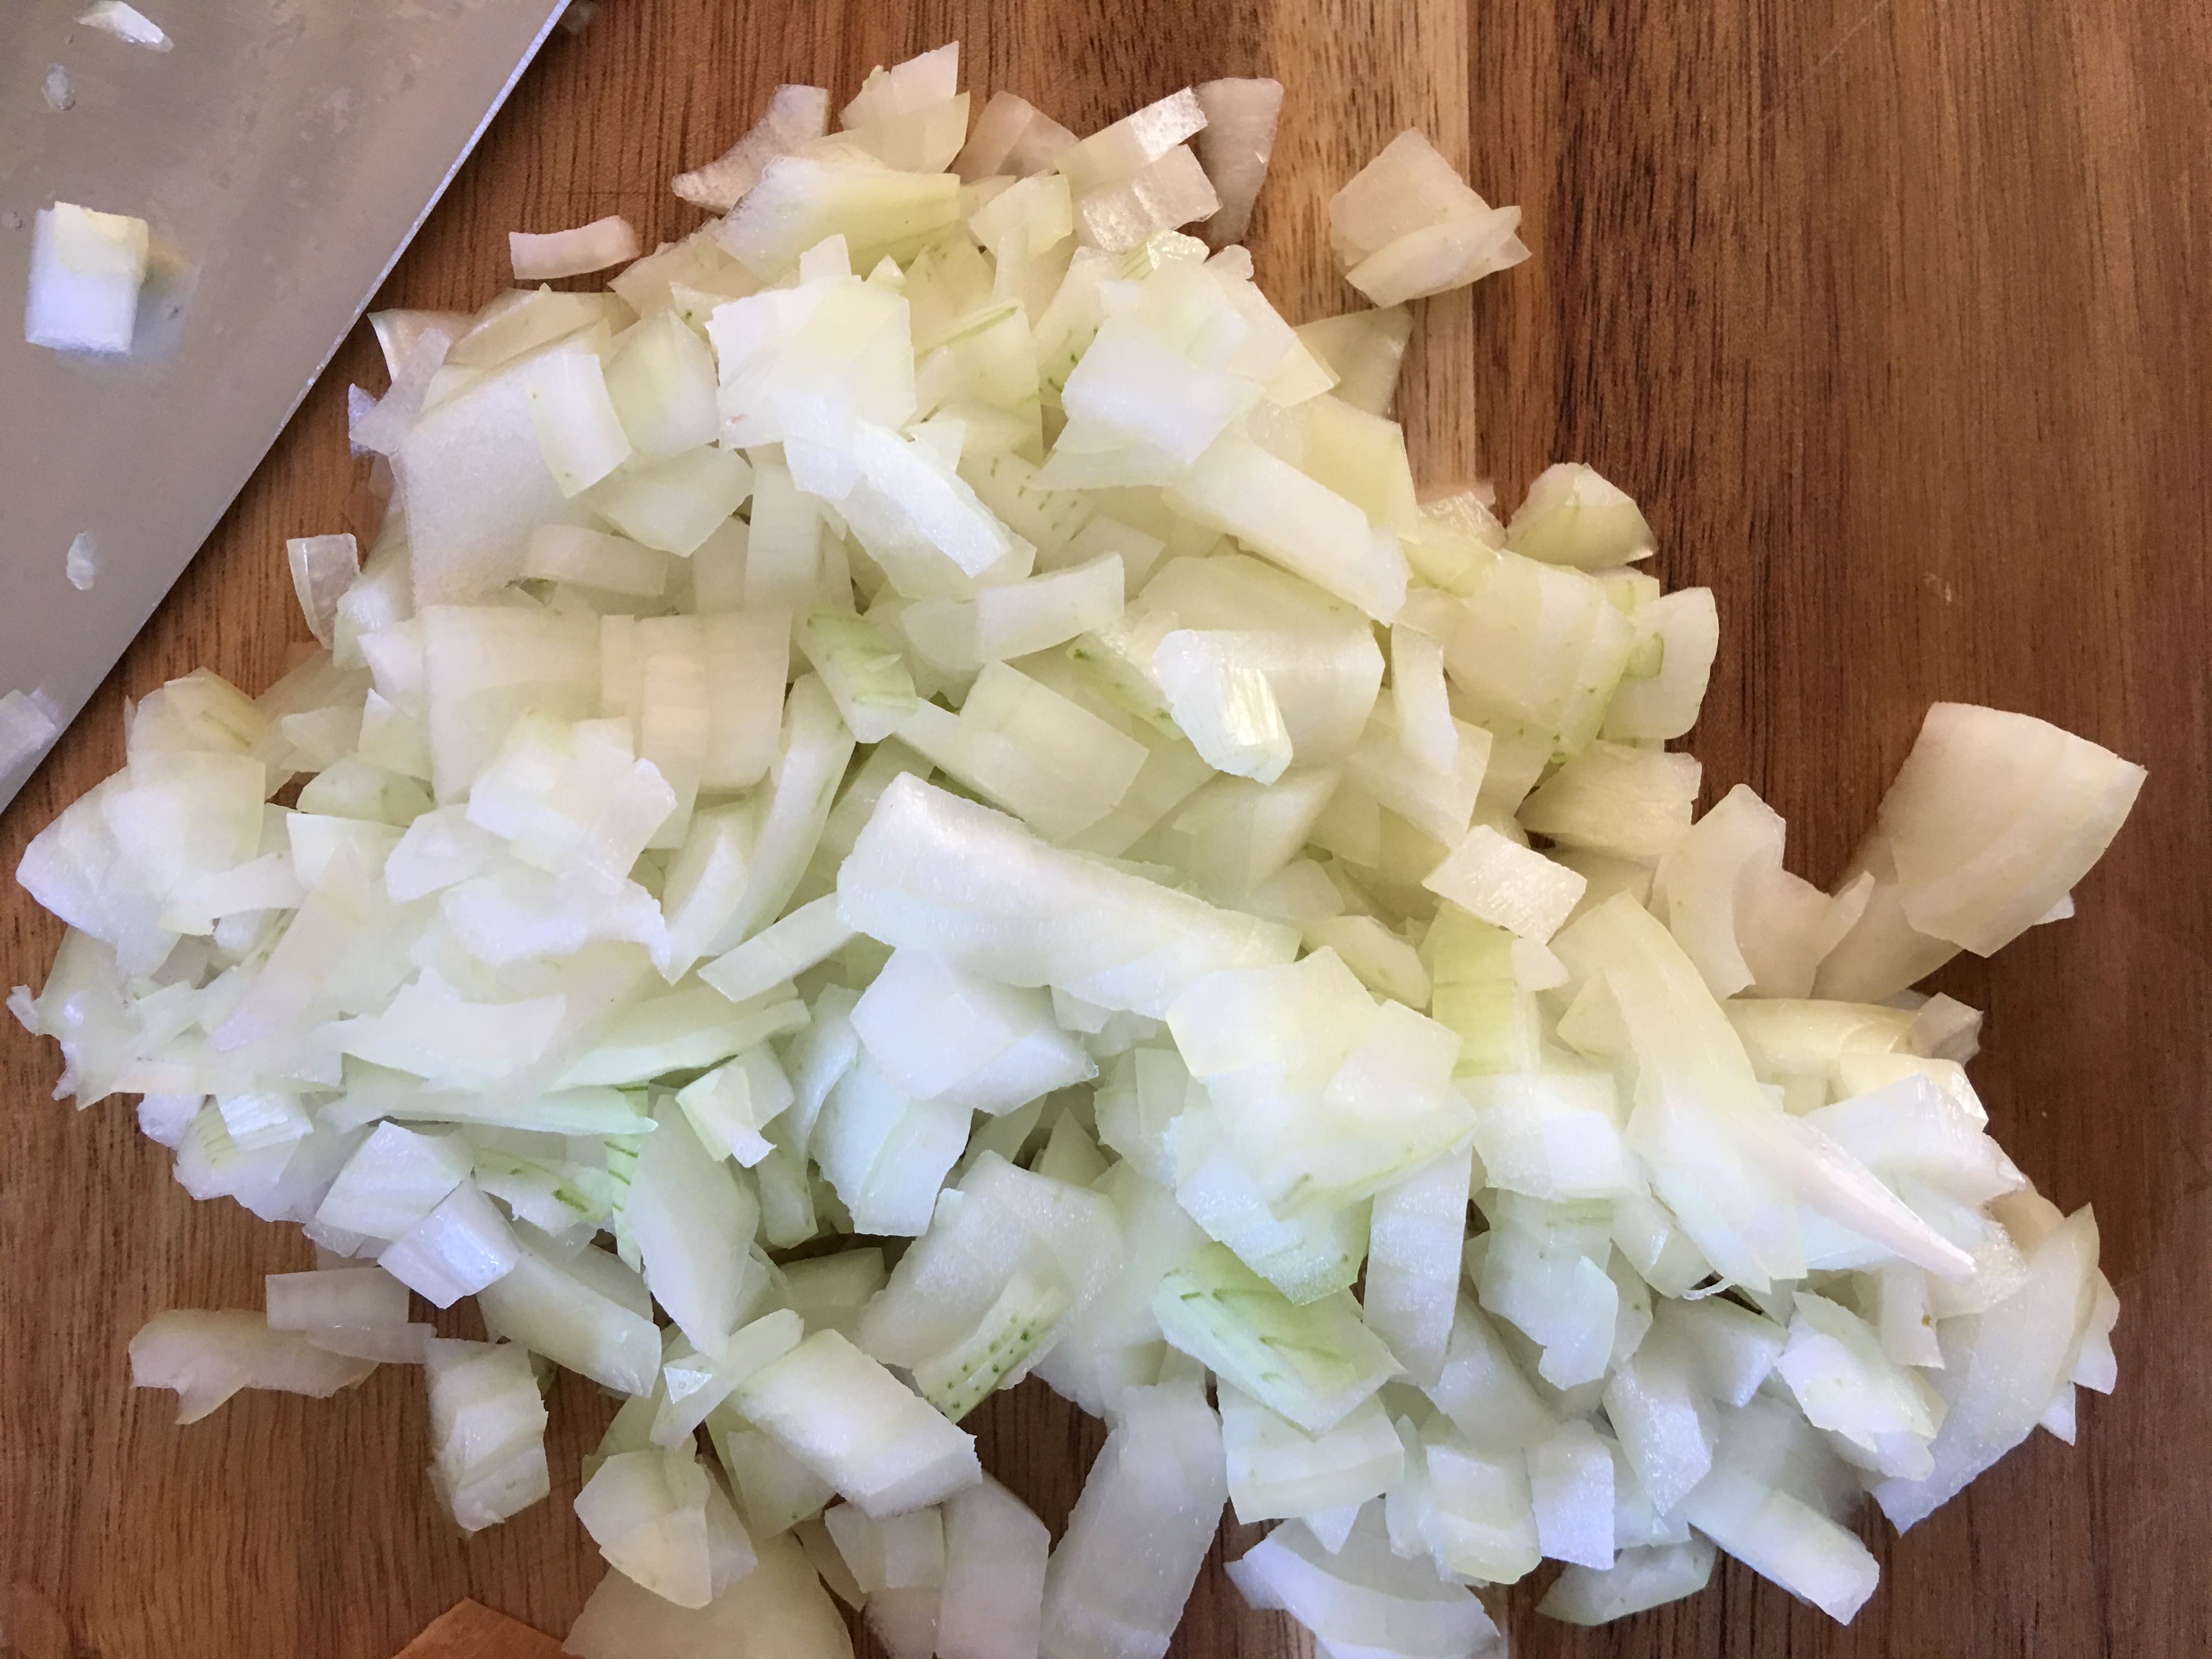 diced onion 